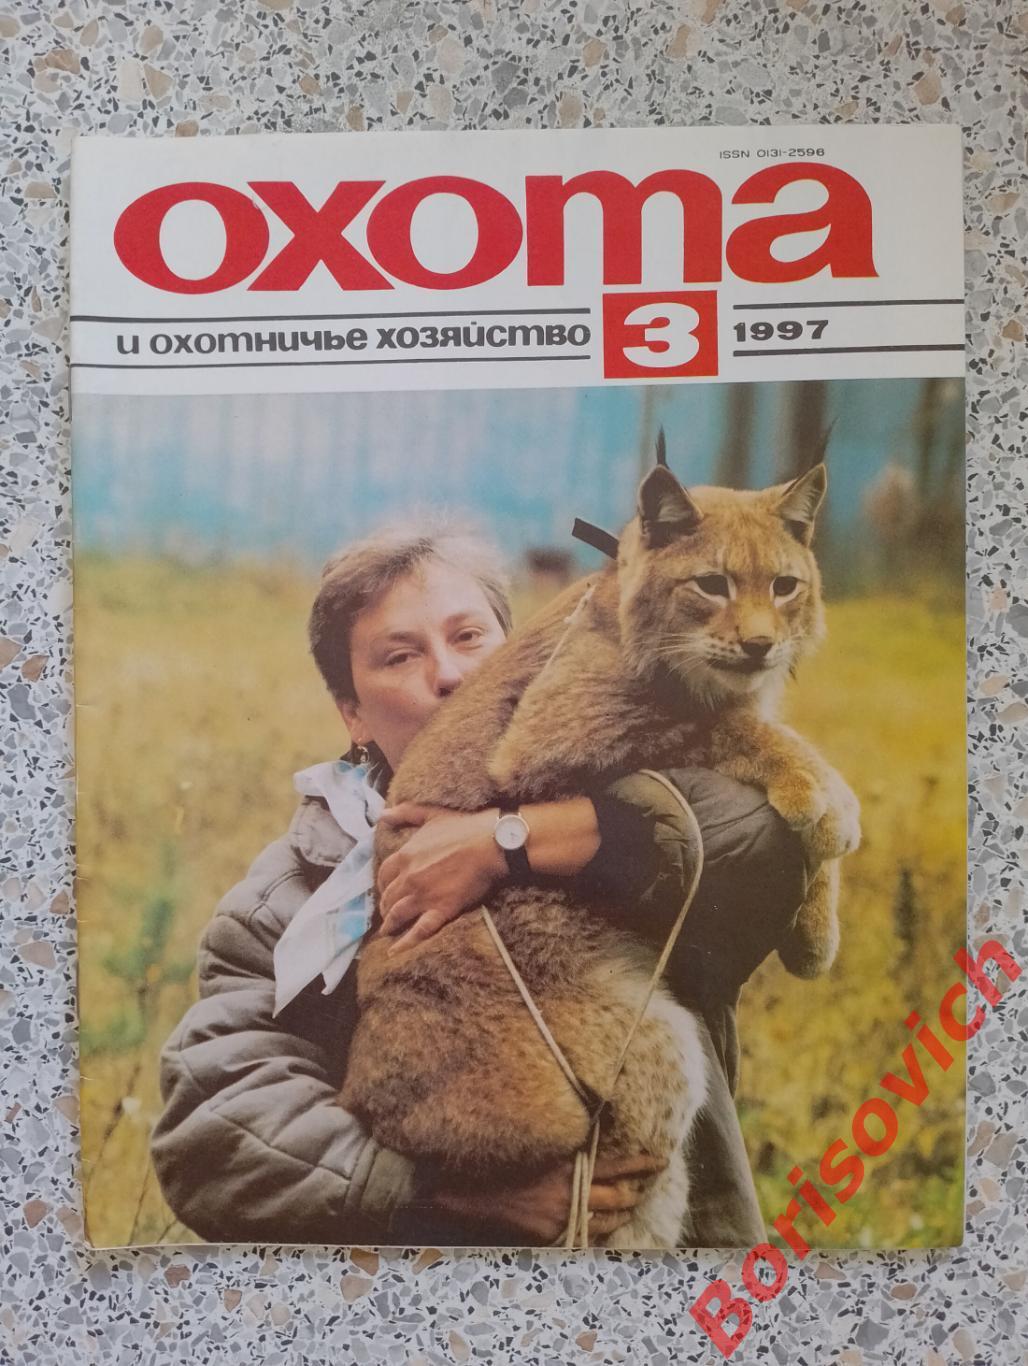 ОХОТА и охотничье хозяйство N 3. 1997